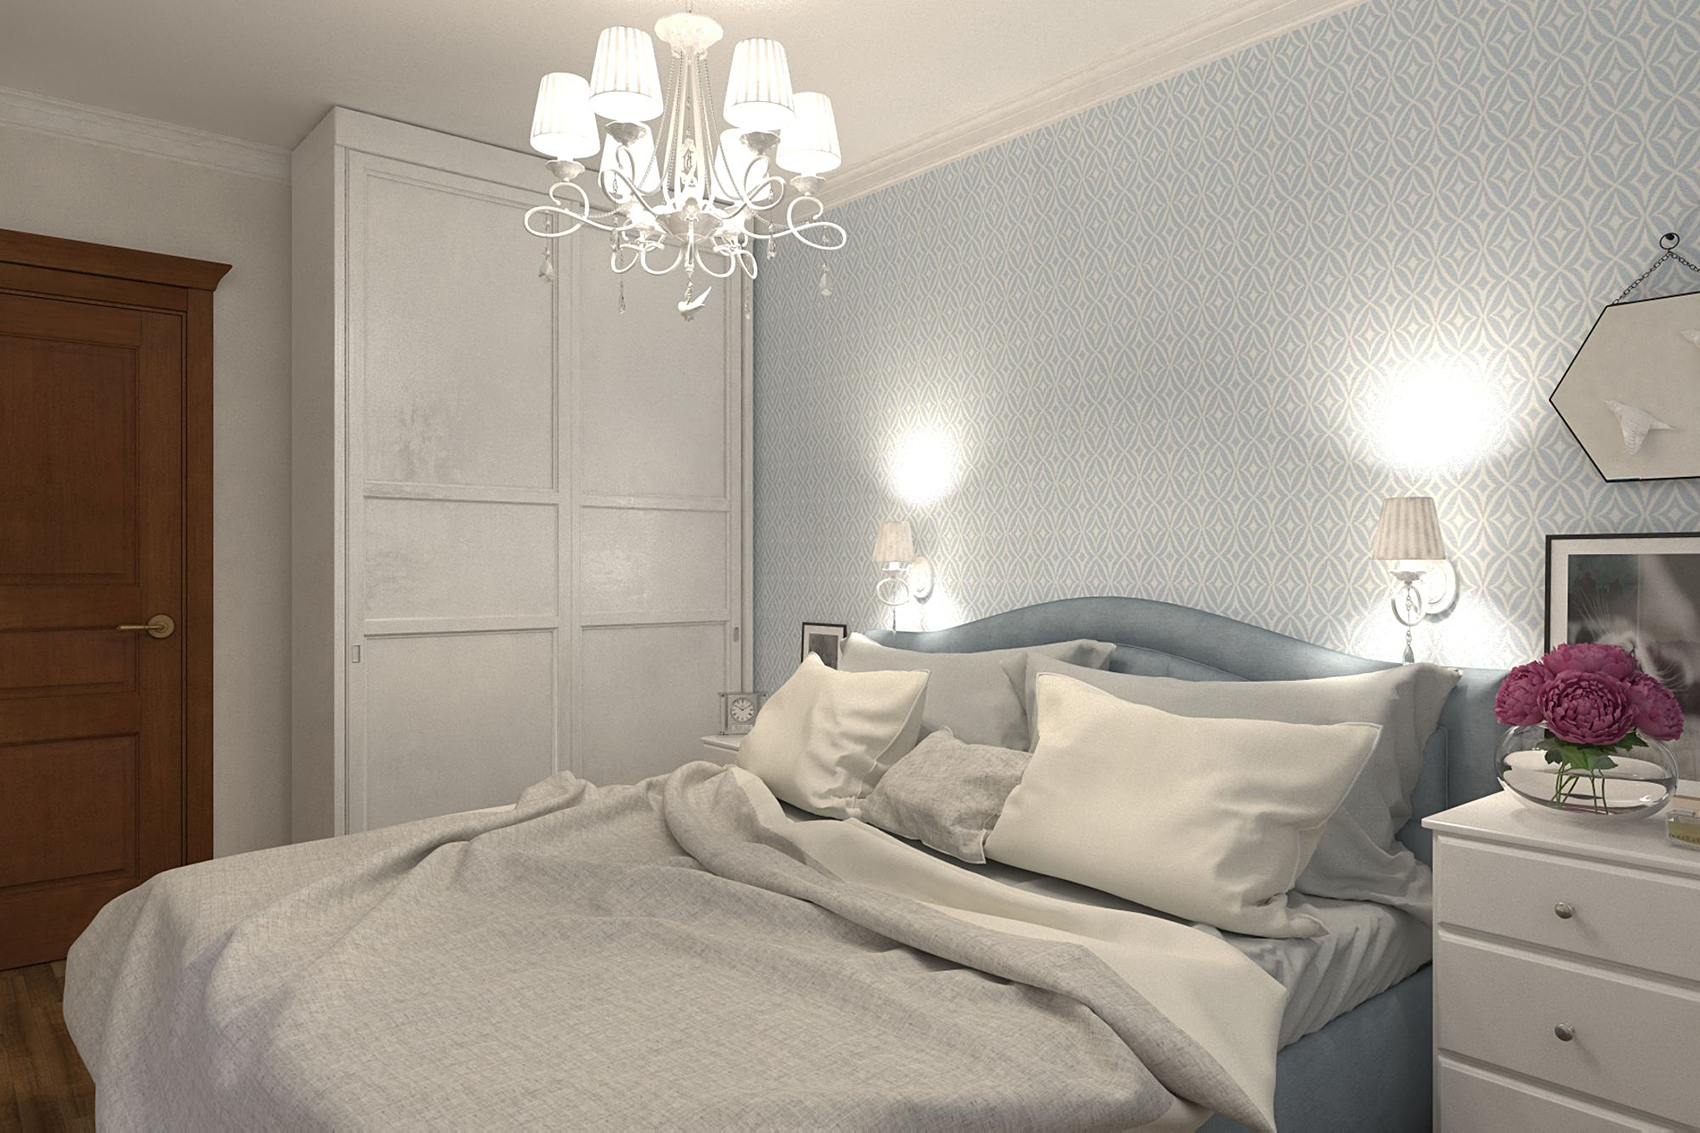 Освещение комнаты без люстры: примеры для спальни и гостиной (150+ фото)